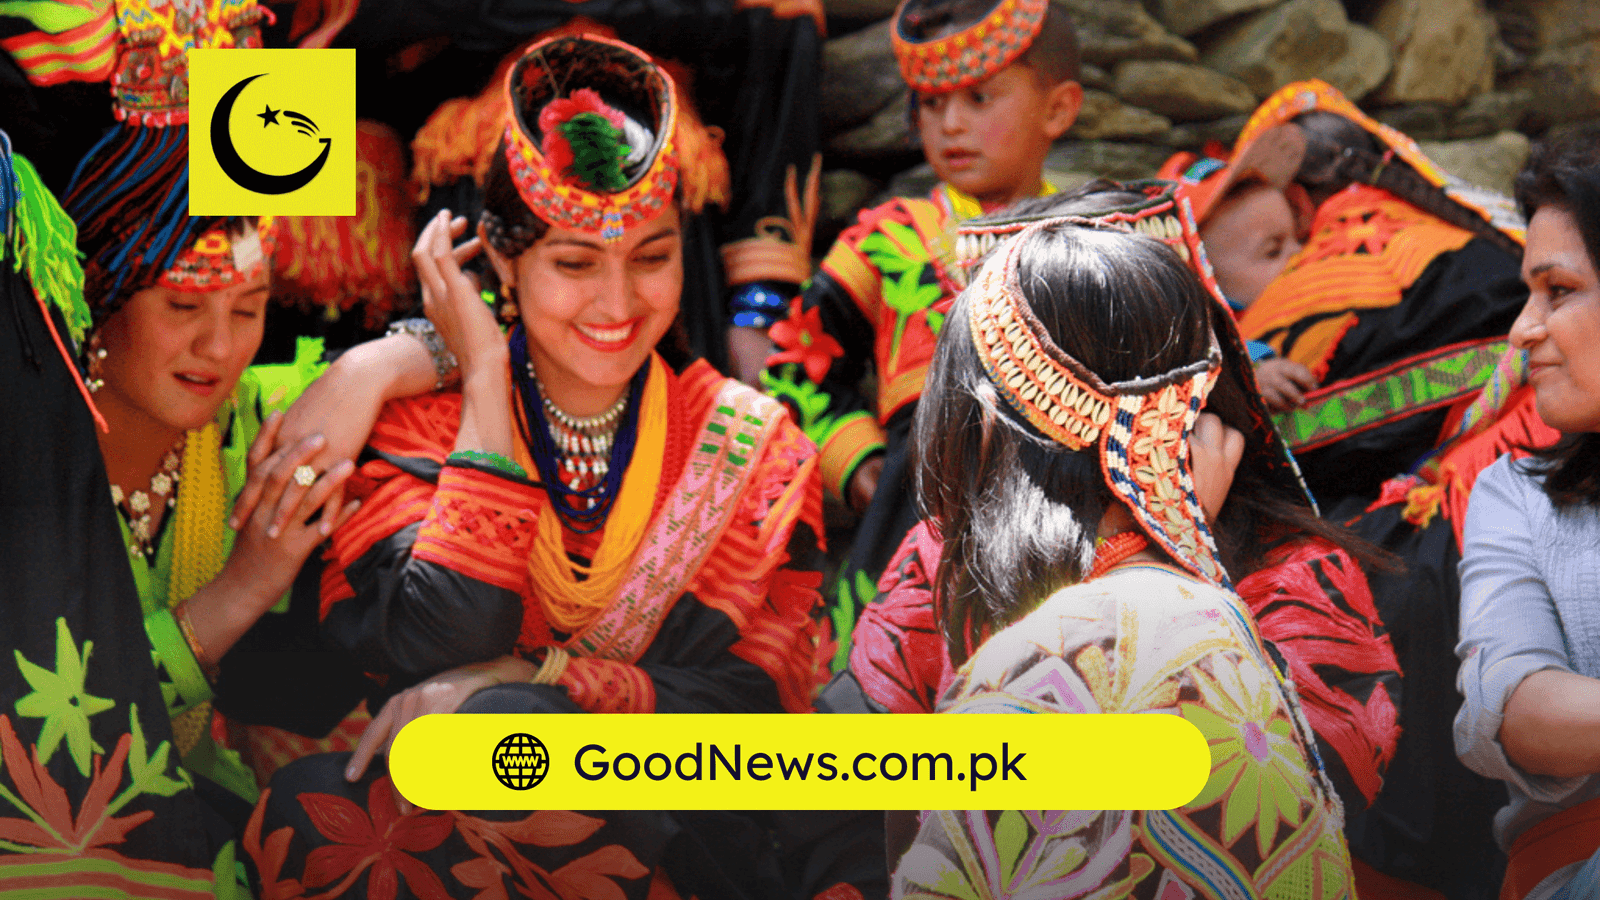 KPK Tourism - Good News Pakistan